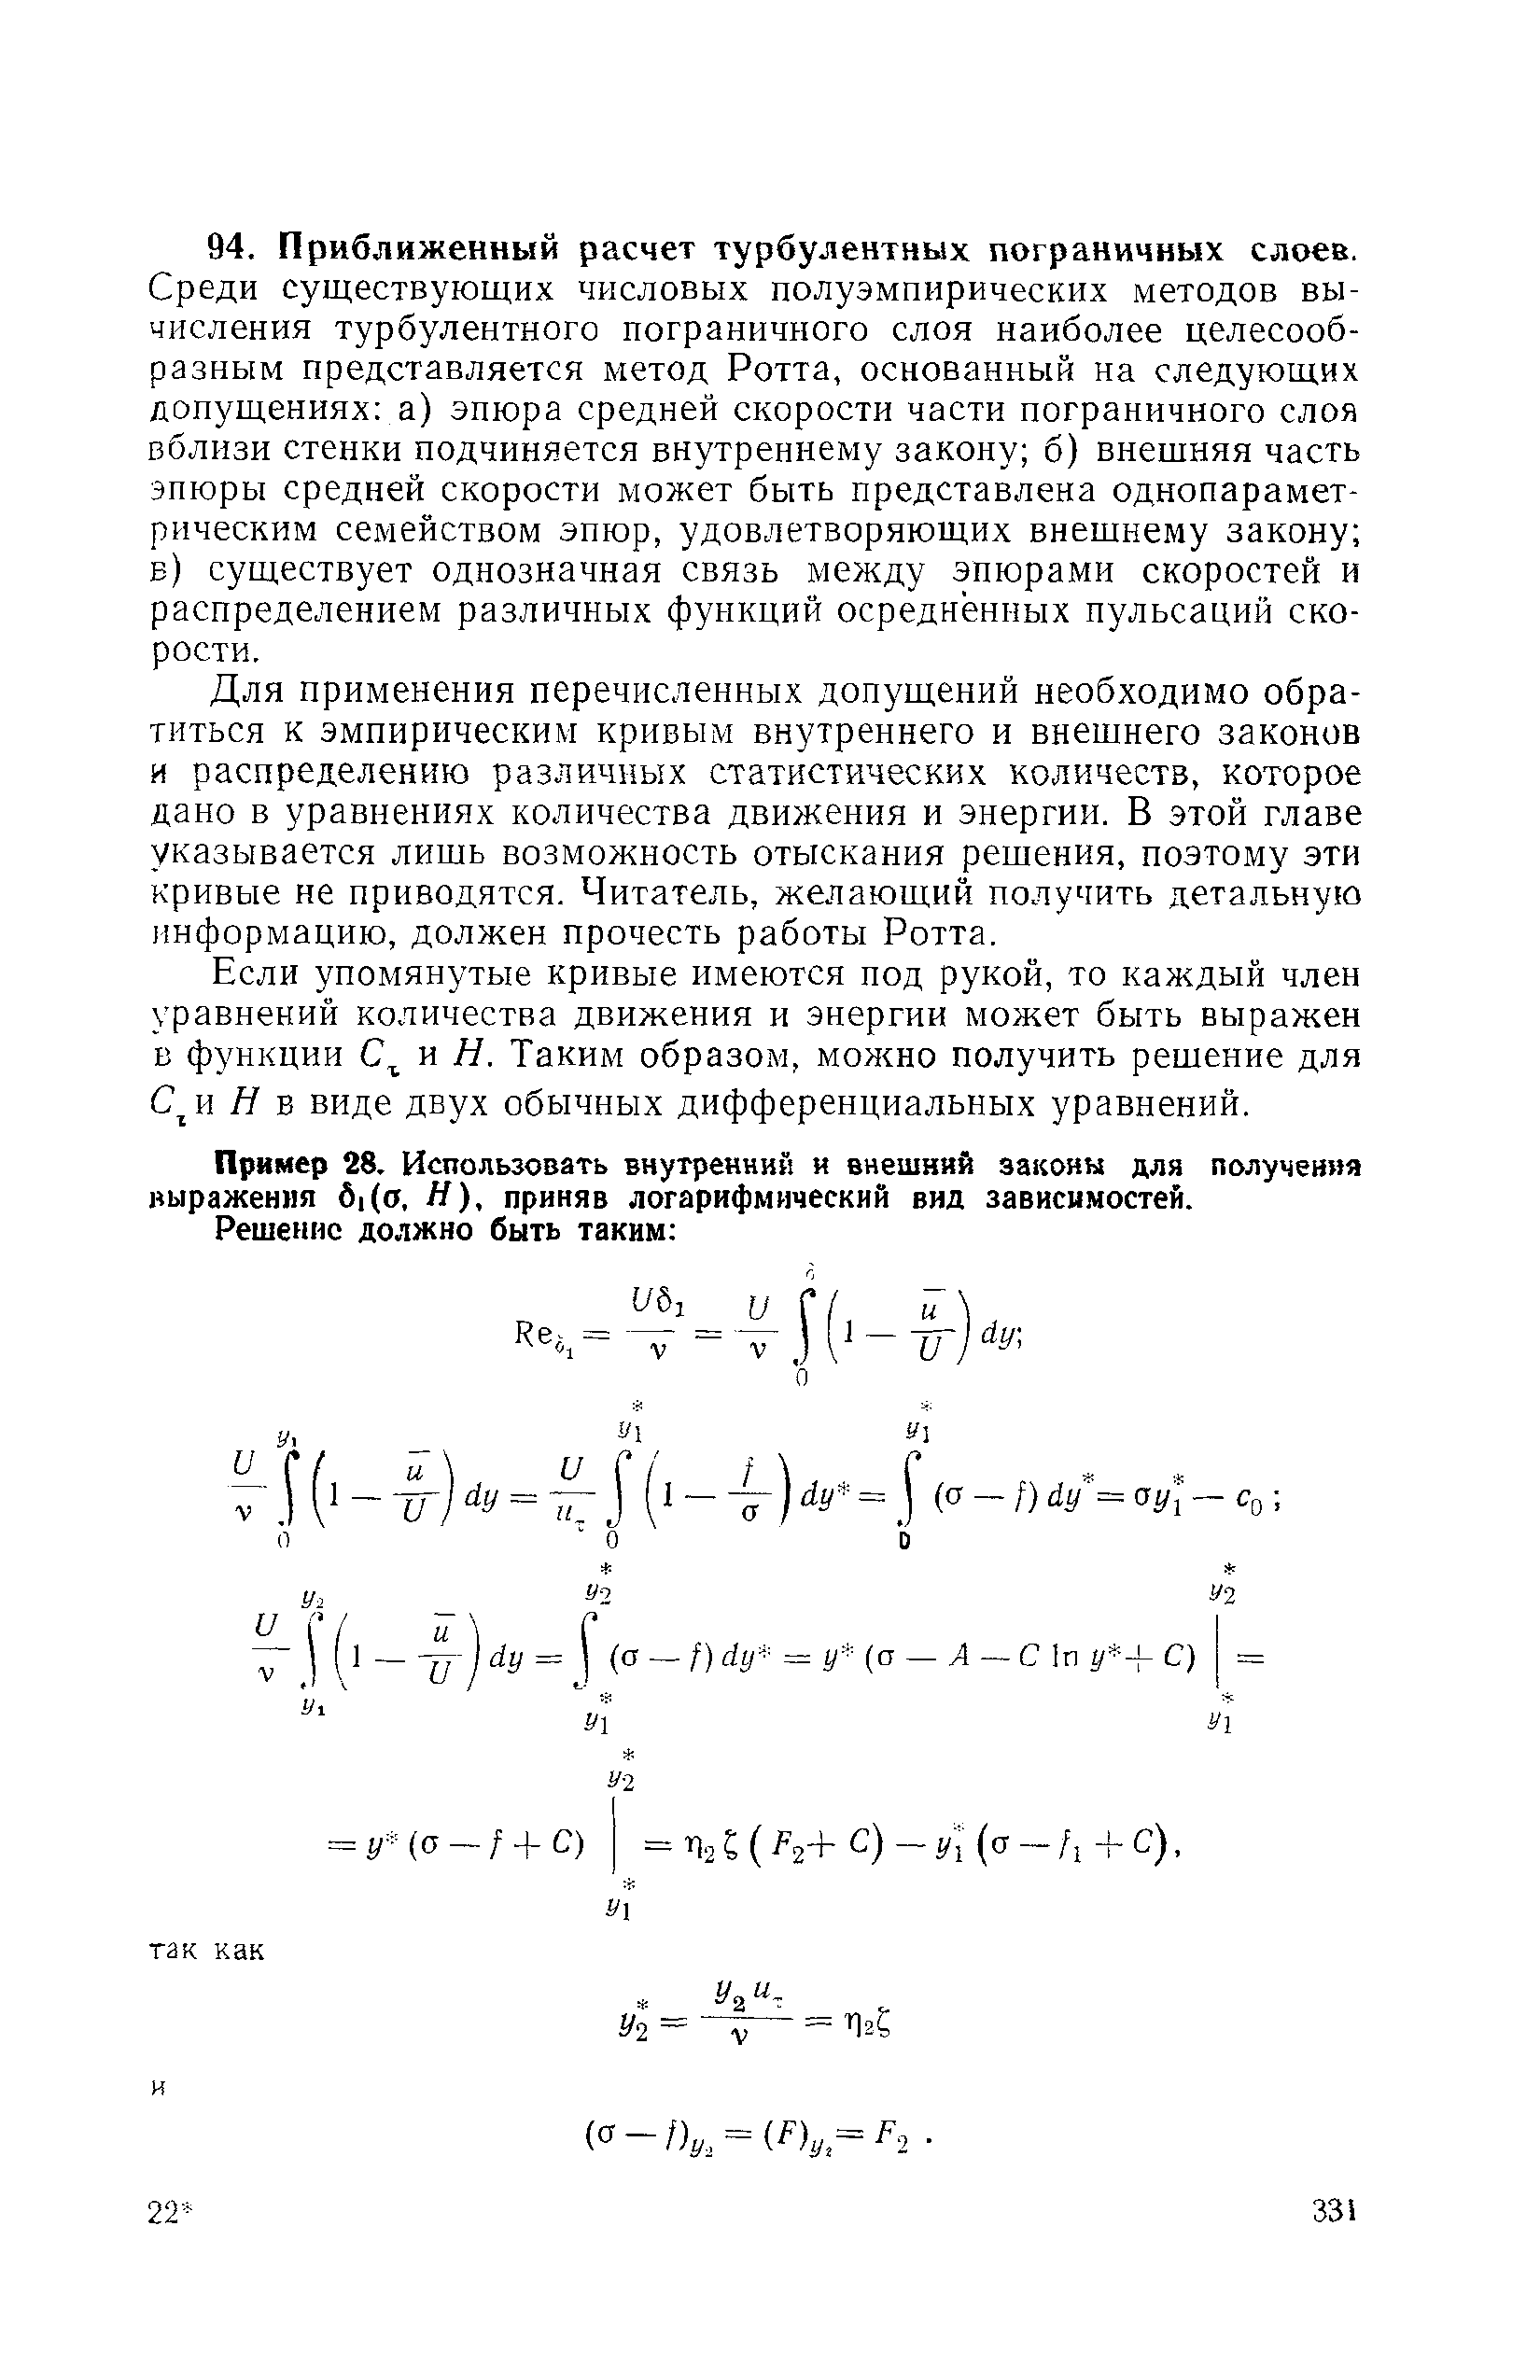 Среди существующих числовых полуэмпирических методов вычисления турбулентного пограничного слоя наиболее целесообразным представляется метод Ротта, основанный на следующих допущениях а) эпюра средней скорости части пограничного слоя вблизи стенки подчиняется внутреннему закону б) внешняя часть эпюры средней скорости может быть представлена однопараметрическим семейством эпюр, удовлетворяющих внешнему закону б) существует однозначная связь между эпюрами скоростей и распределением различных функций осредненных пульсаций скорости.
